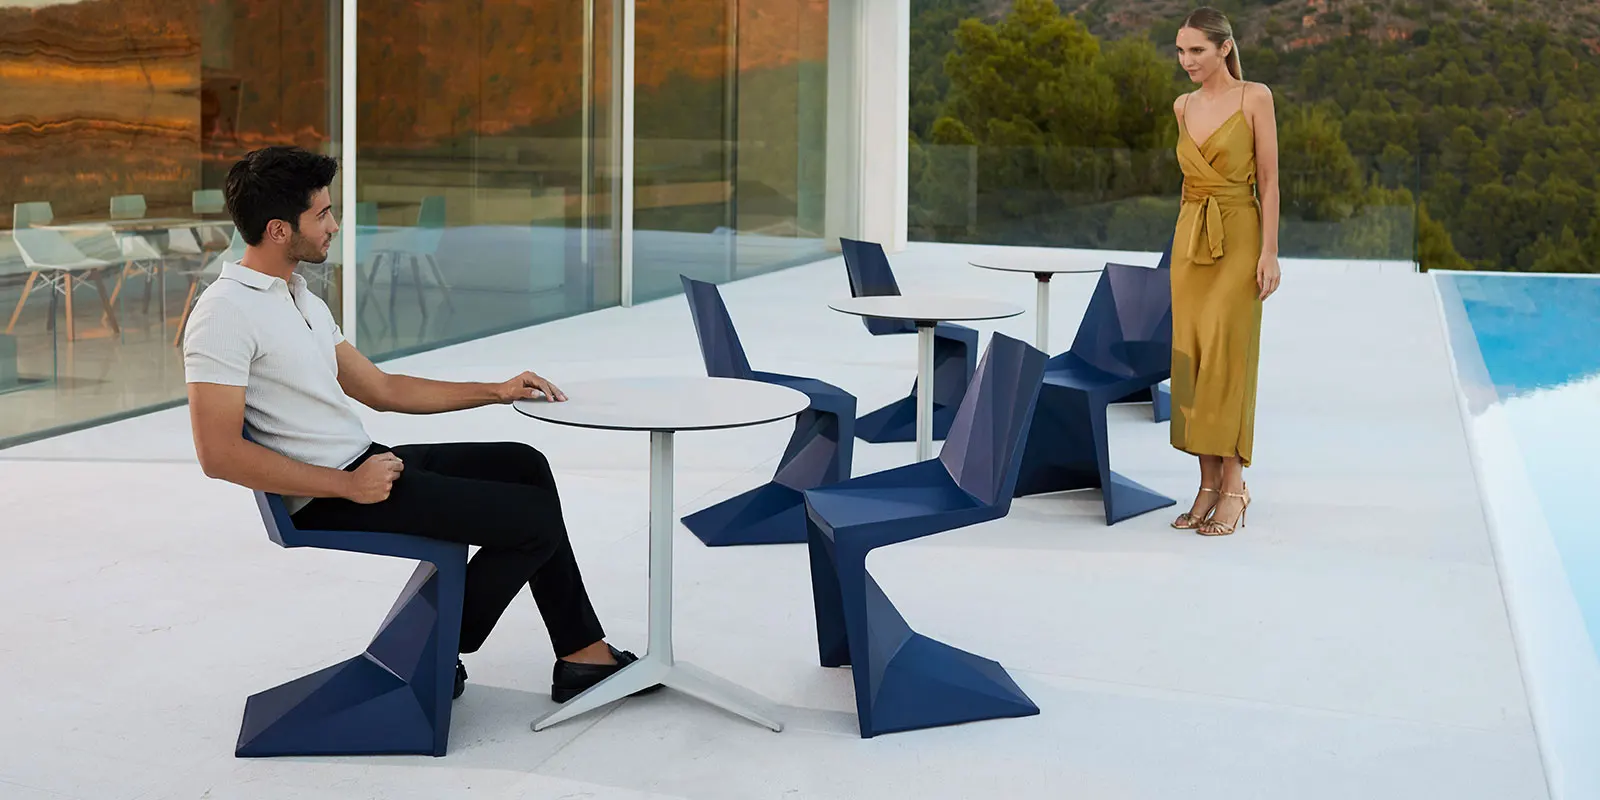 chaises-empilables-mobilier-contract-design-fabricants-mobilier-contract-exterieur-voxel-karim-rashid-vondom (3) copie